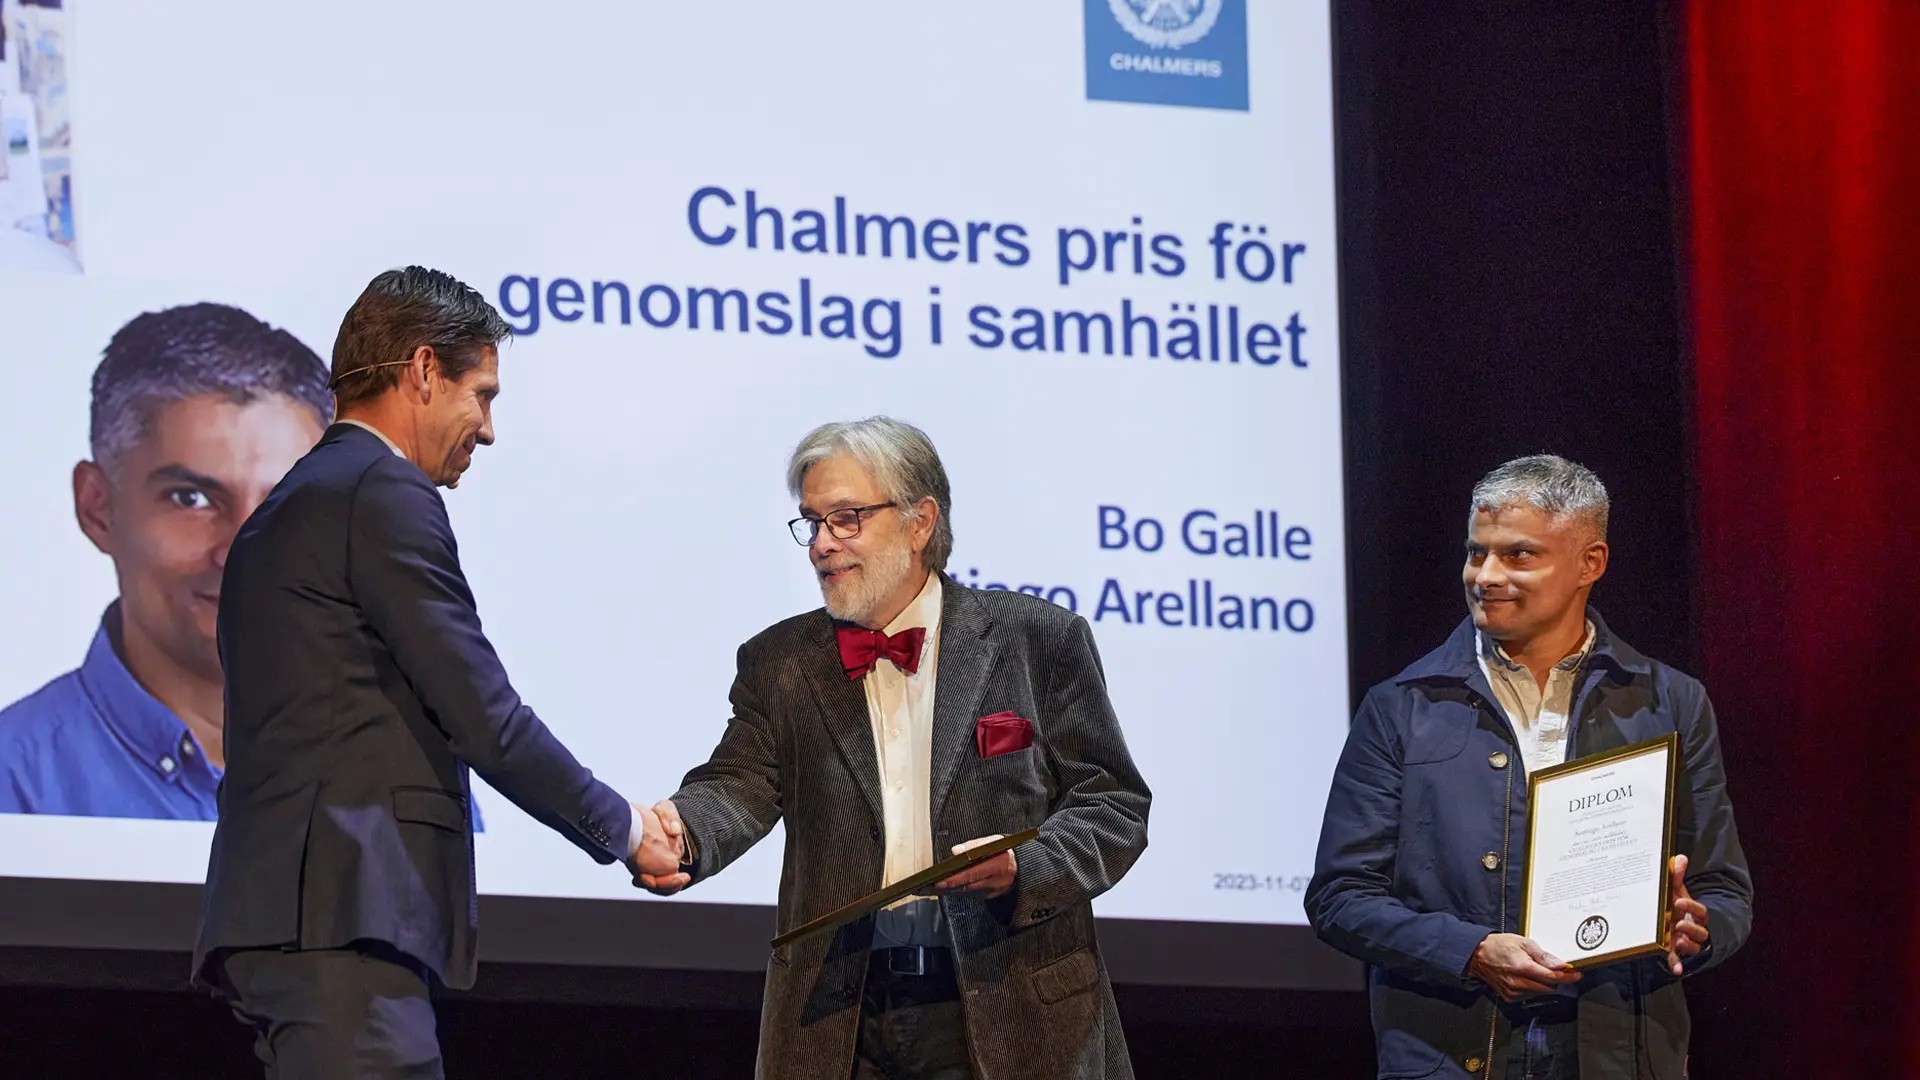 Bo Galle och Santiago Arellano tilldelas Chalmers pris för Genomslag i samhället 2023